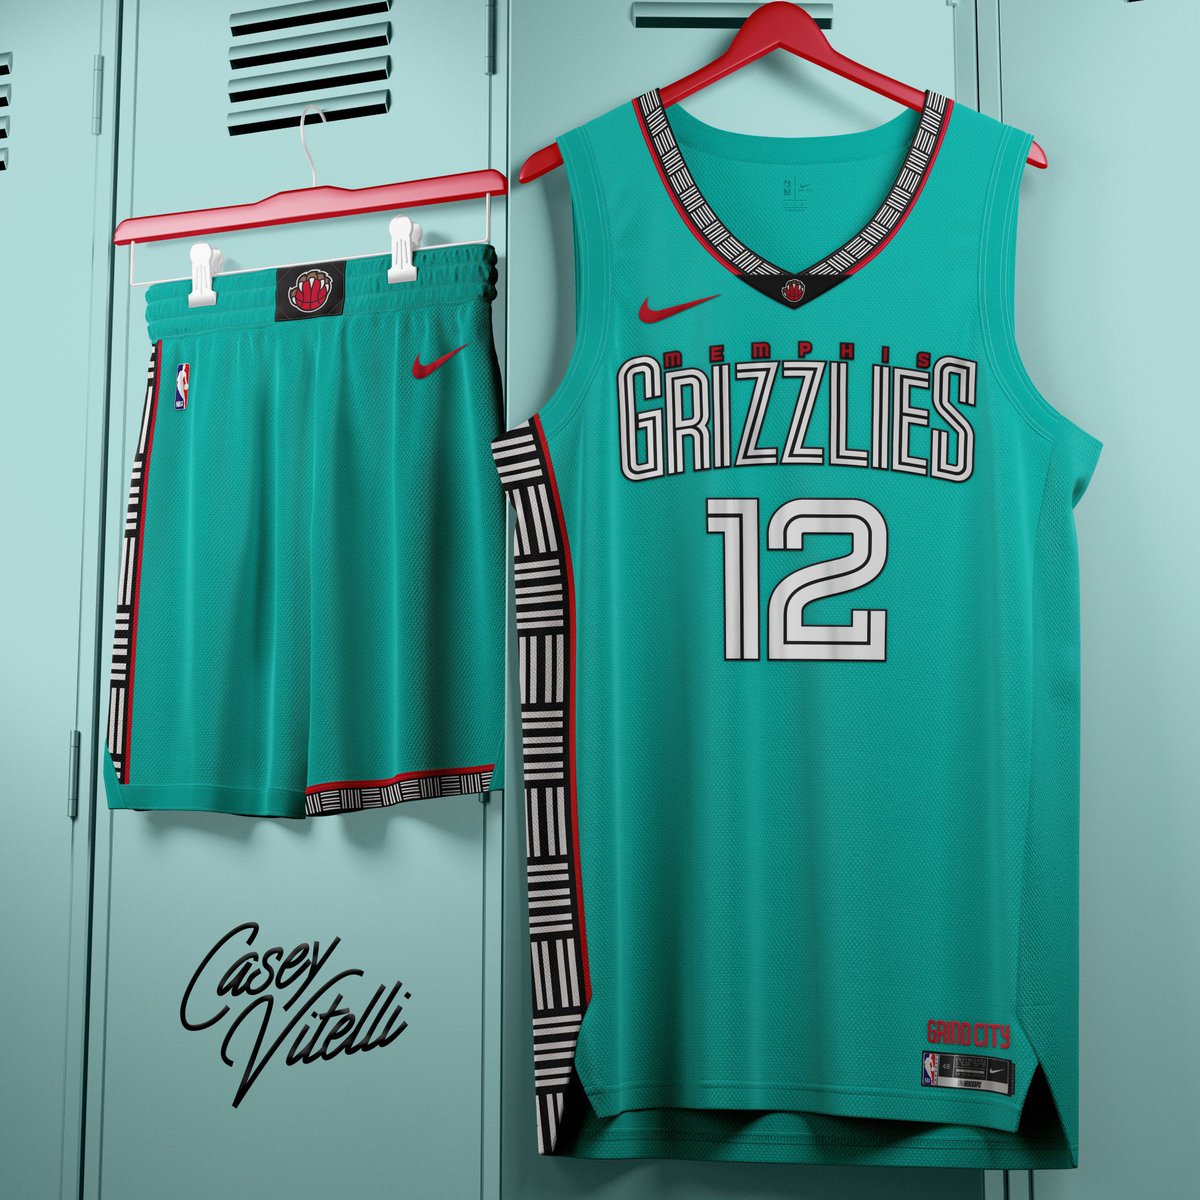 Memphis Grizzlies Uniforms (@GrizzUnis) / X